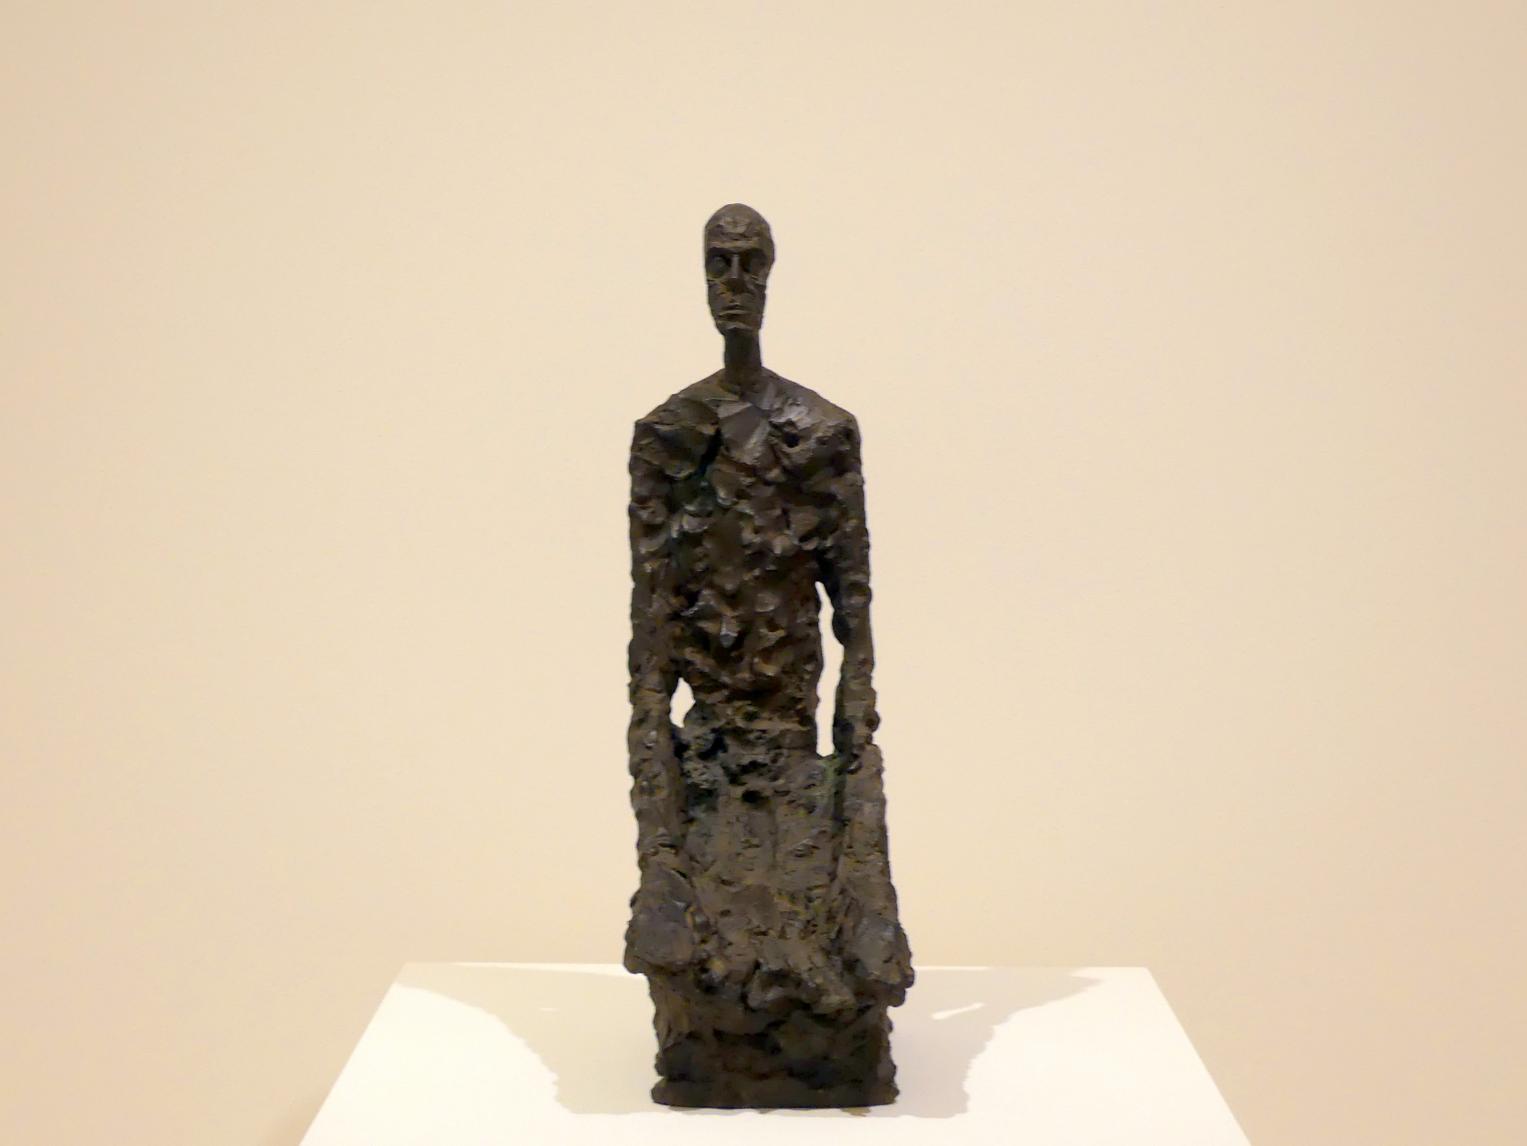 Alberto Giacometti (1914–1965), Halbporträt eines Mannes, Prag, Nationalgalerie im Messepalast, Ausstellung "Alberto Giacometti" vom 18.07.-01.12.2019, Kleine Skulpturen, 1965